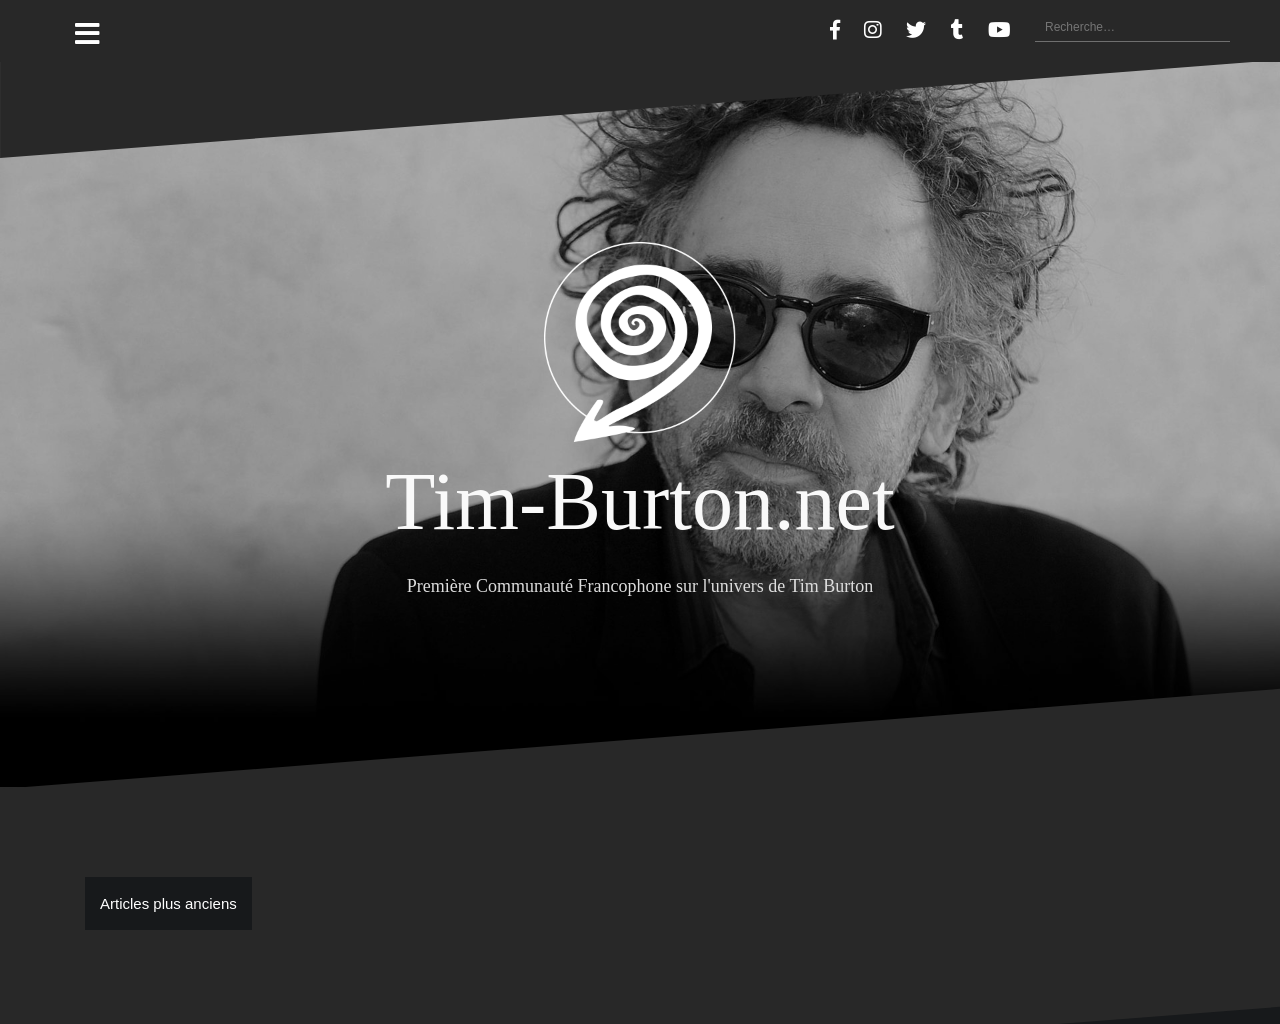 www.tim-burton.net